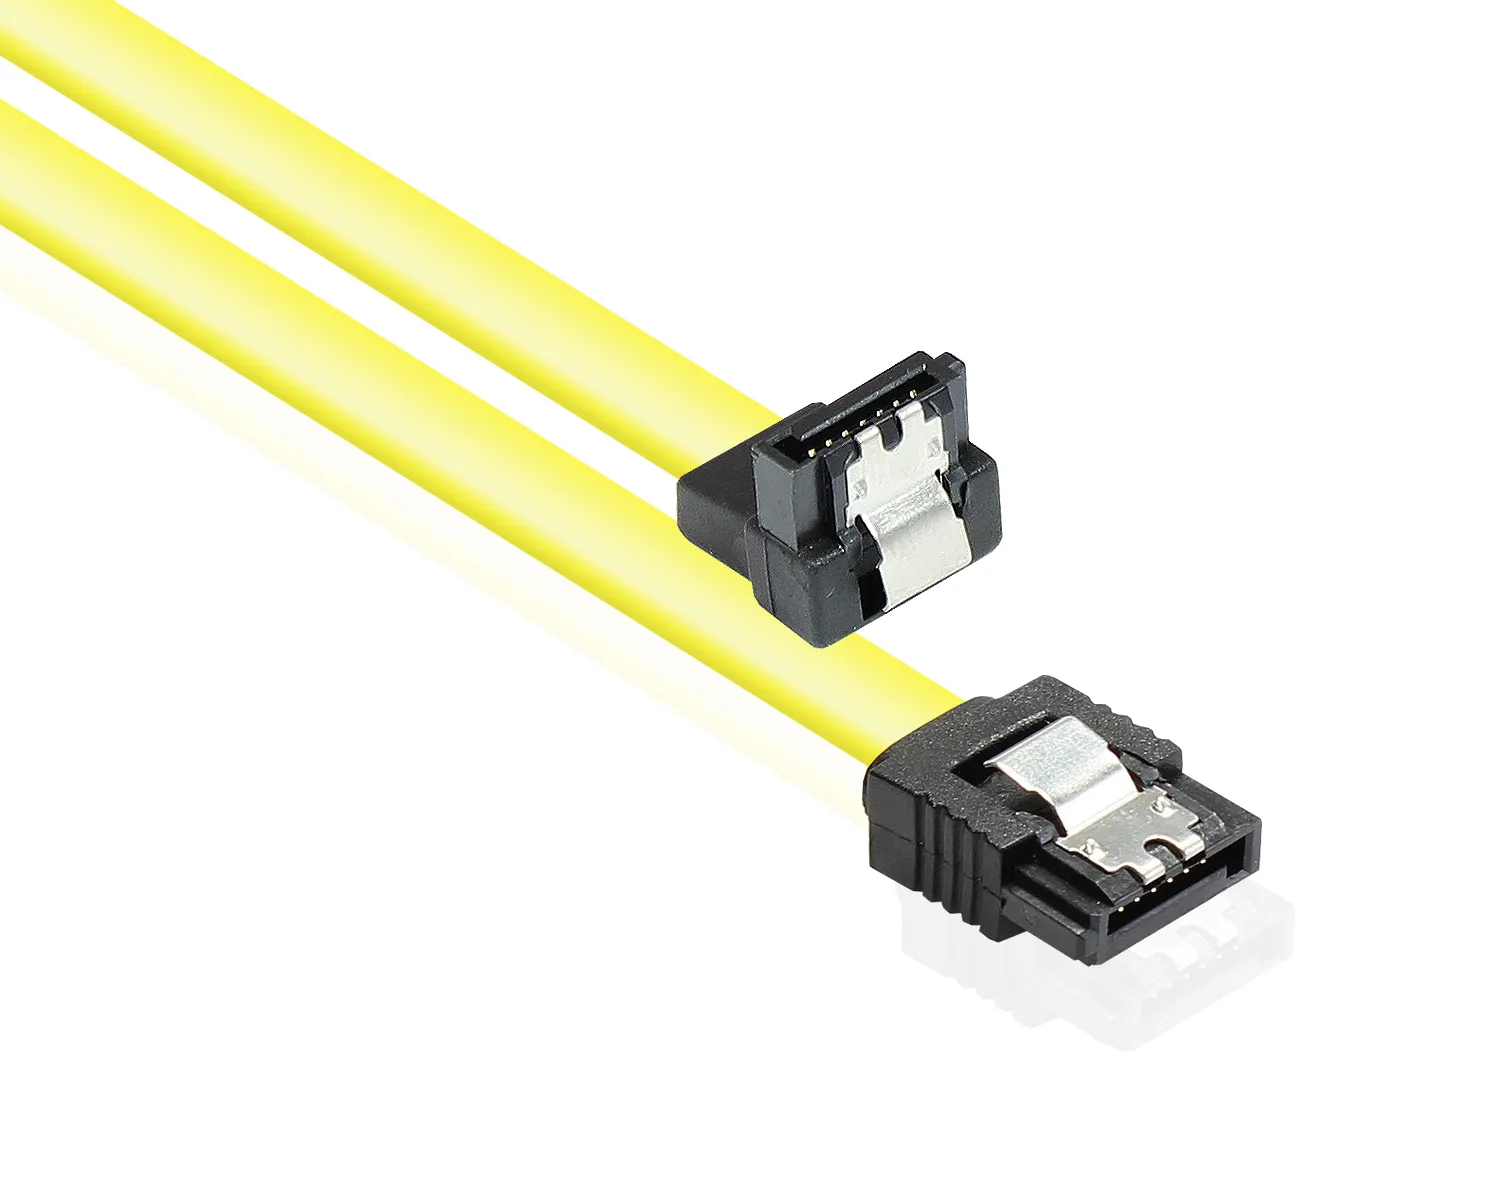 Anschlusskabel SATA 6 Gb/s mit Metallclip, einseitig gewinkelt, gelb, 1m, Good Connections®